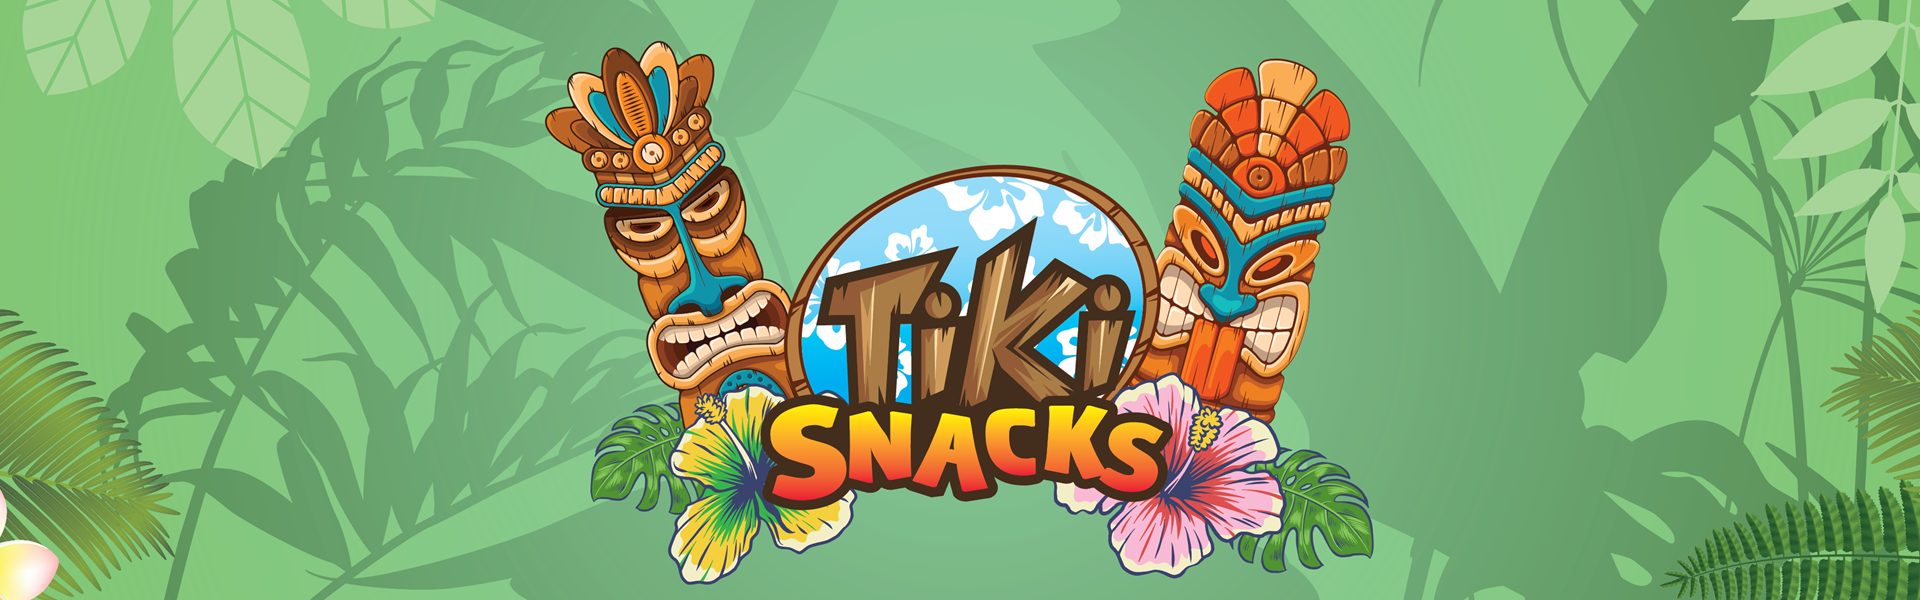 Tiki Snacks